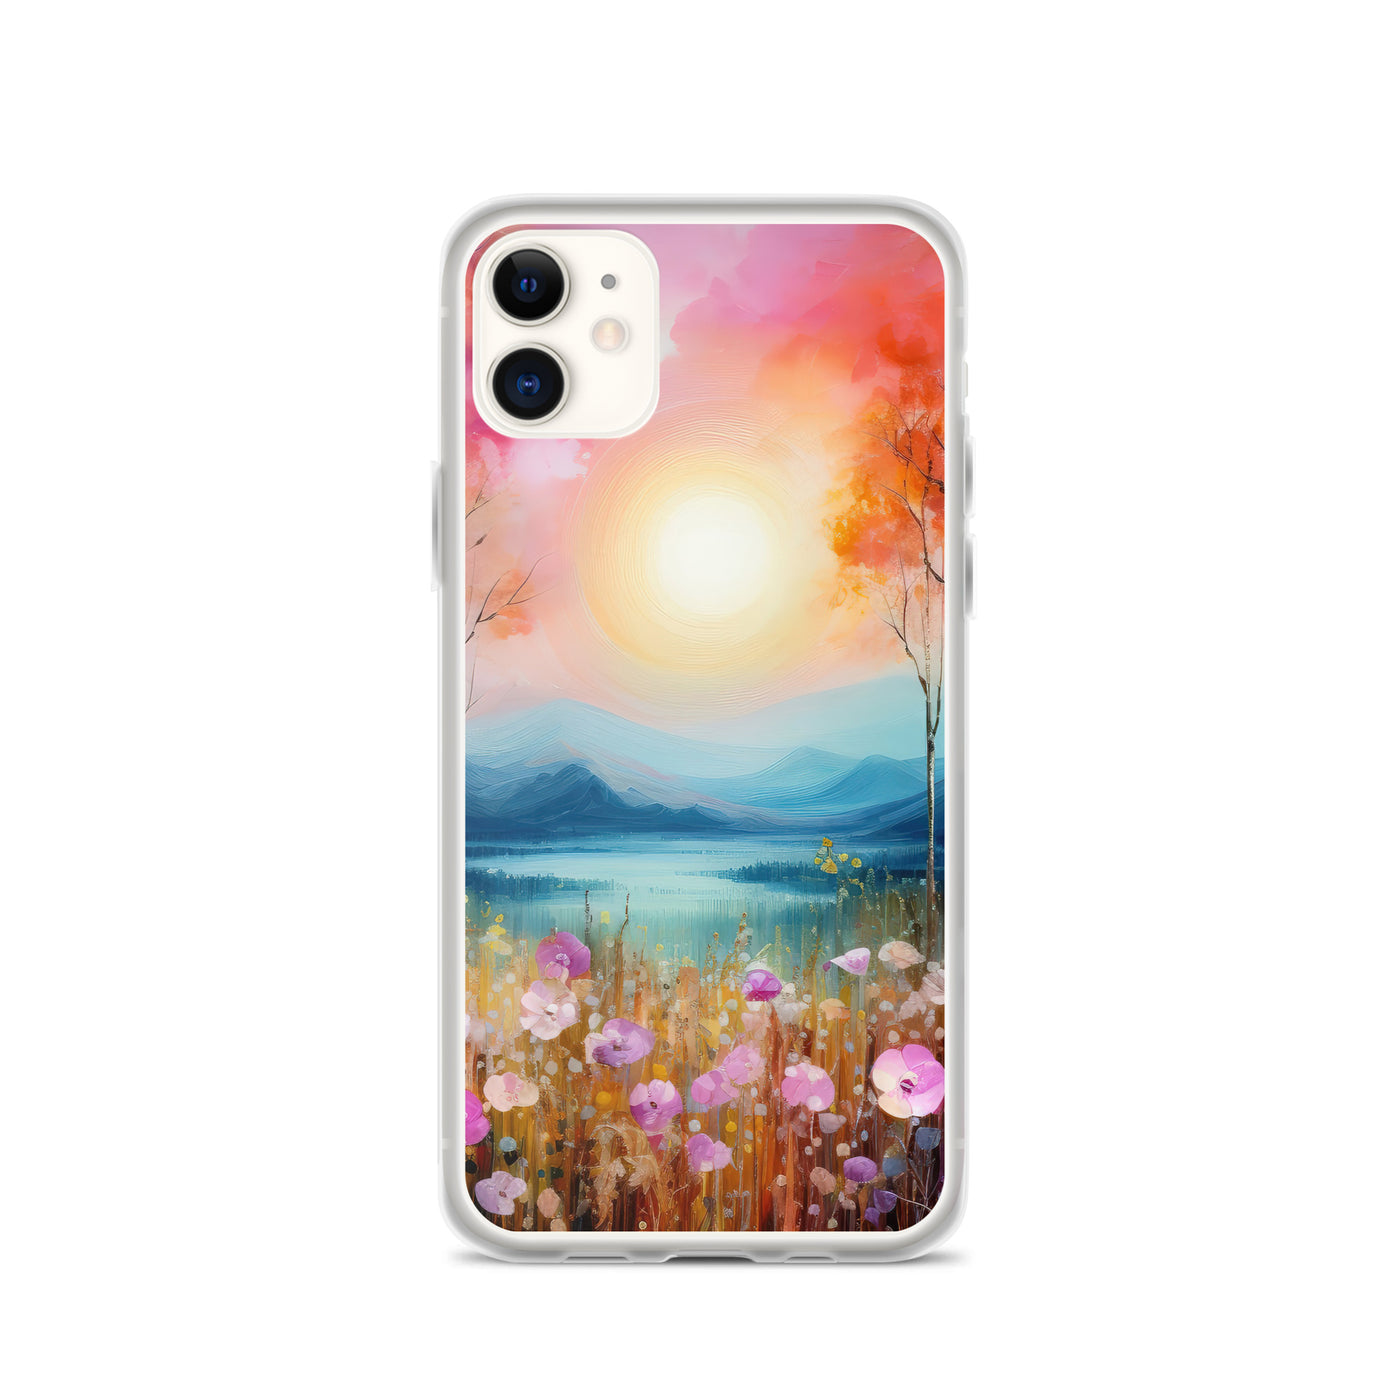 Berge, See, pinke Bäume und Blumen - Malerei - iPhone Schutzhülle (durchsichtig) berge xxx iPhone 11